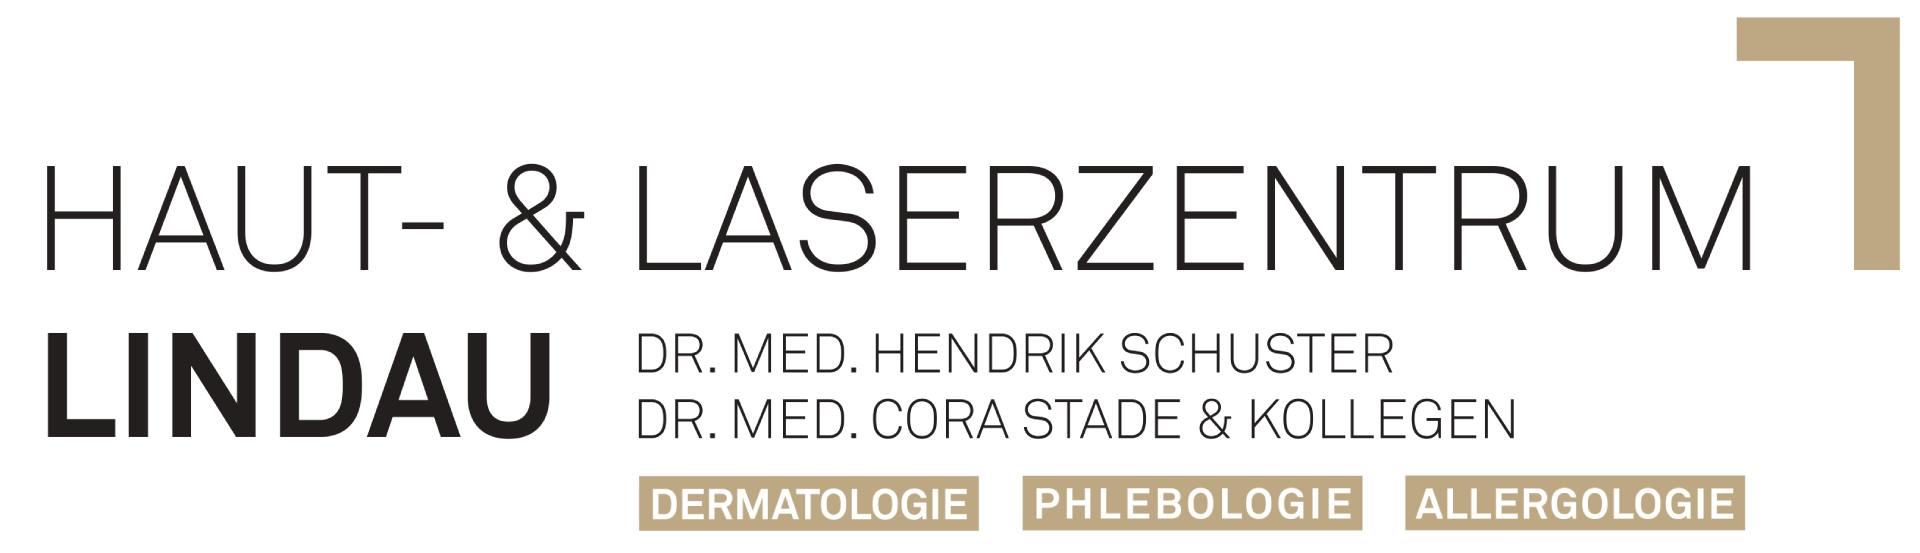 Hautarzt, Haut- und Laserzentrum Lindau, Dr. Schuster und Kollegen, Logo dark